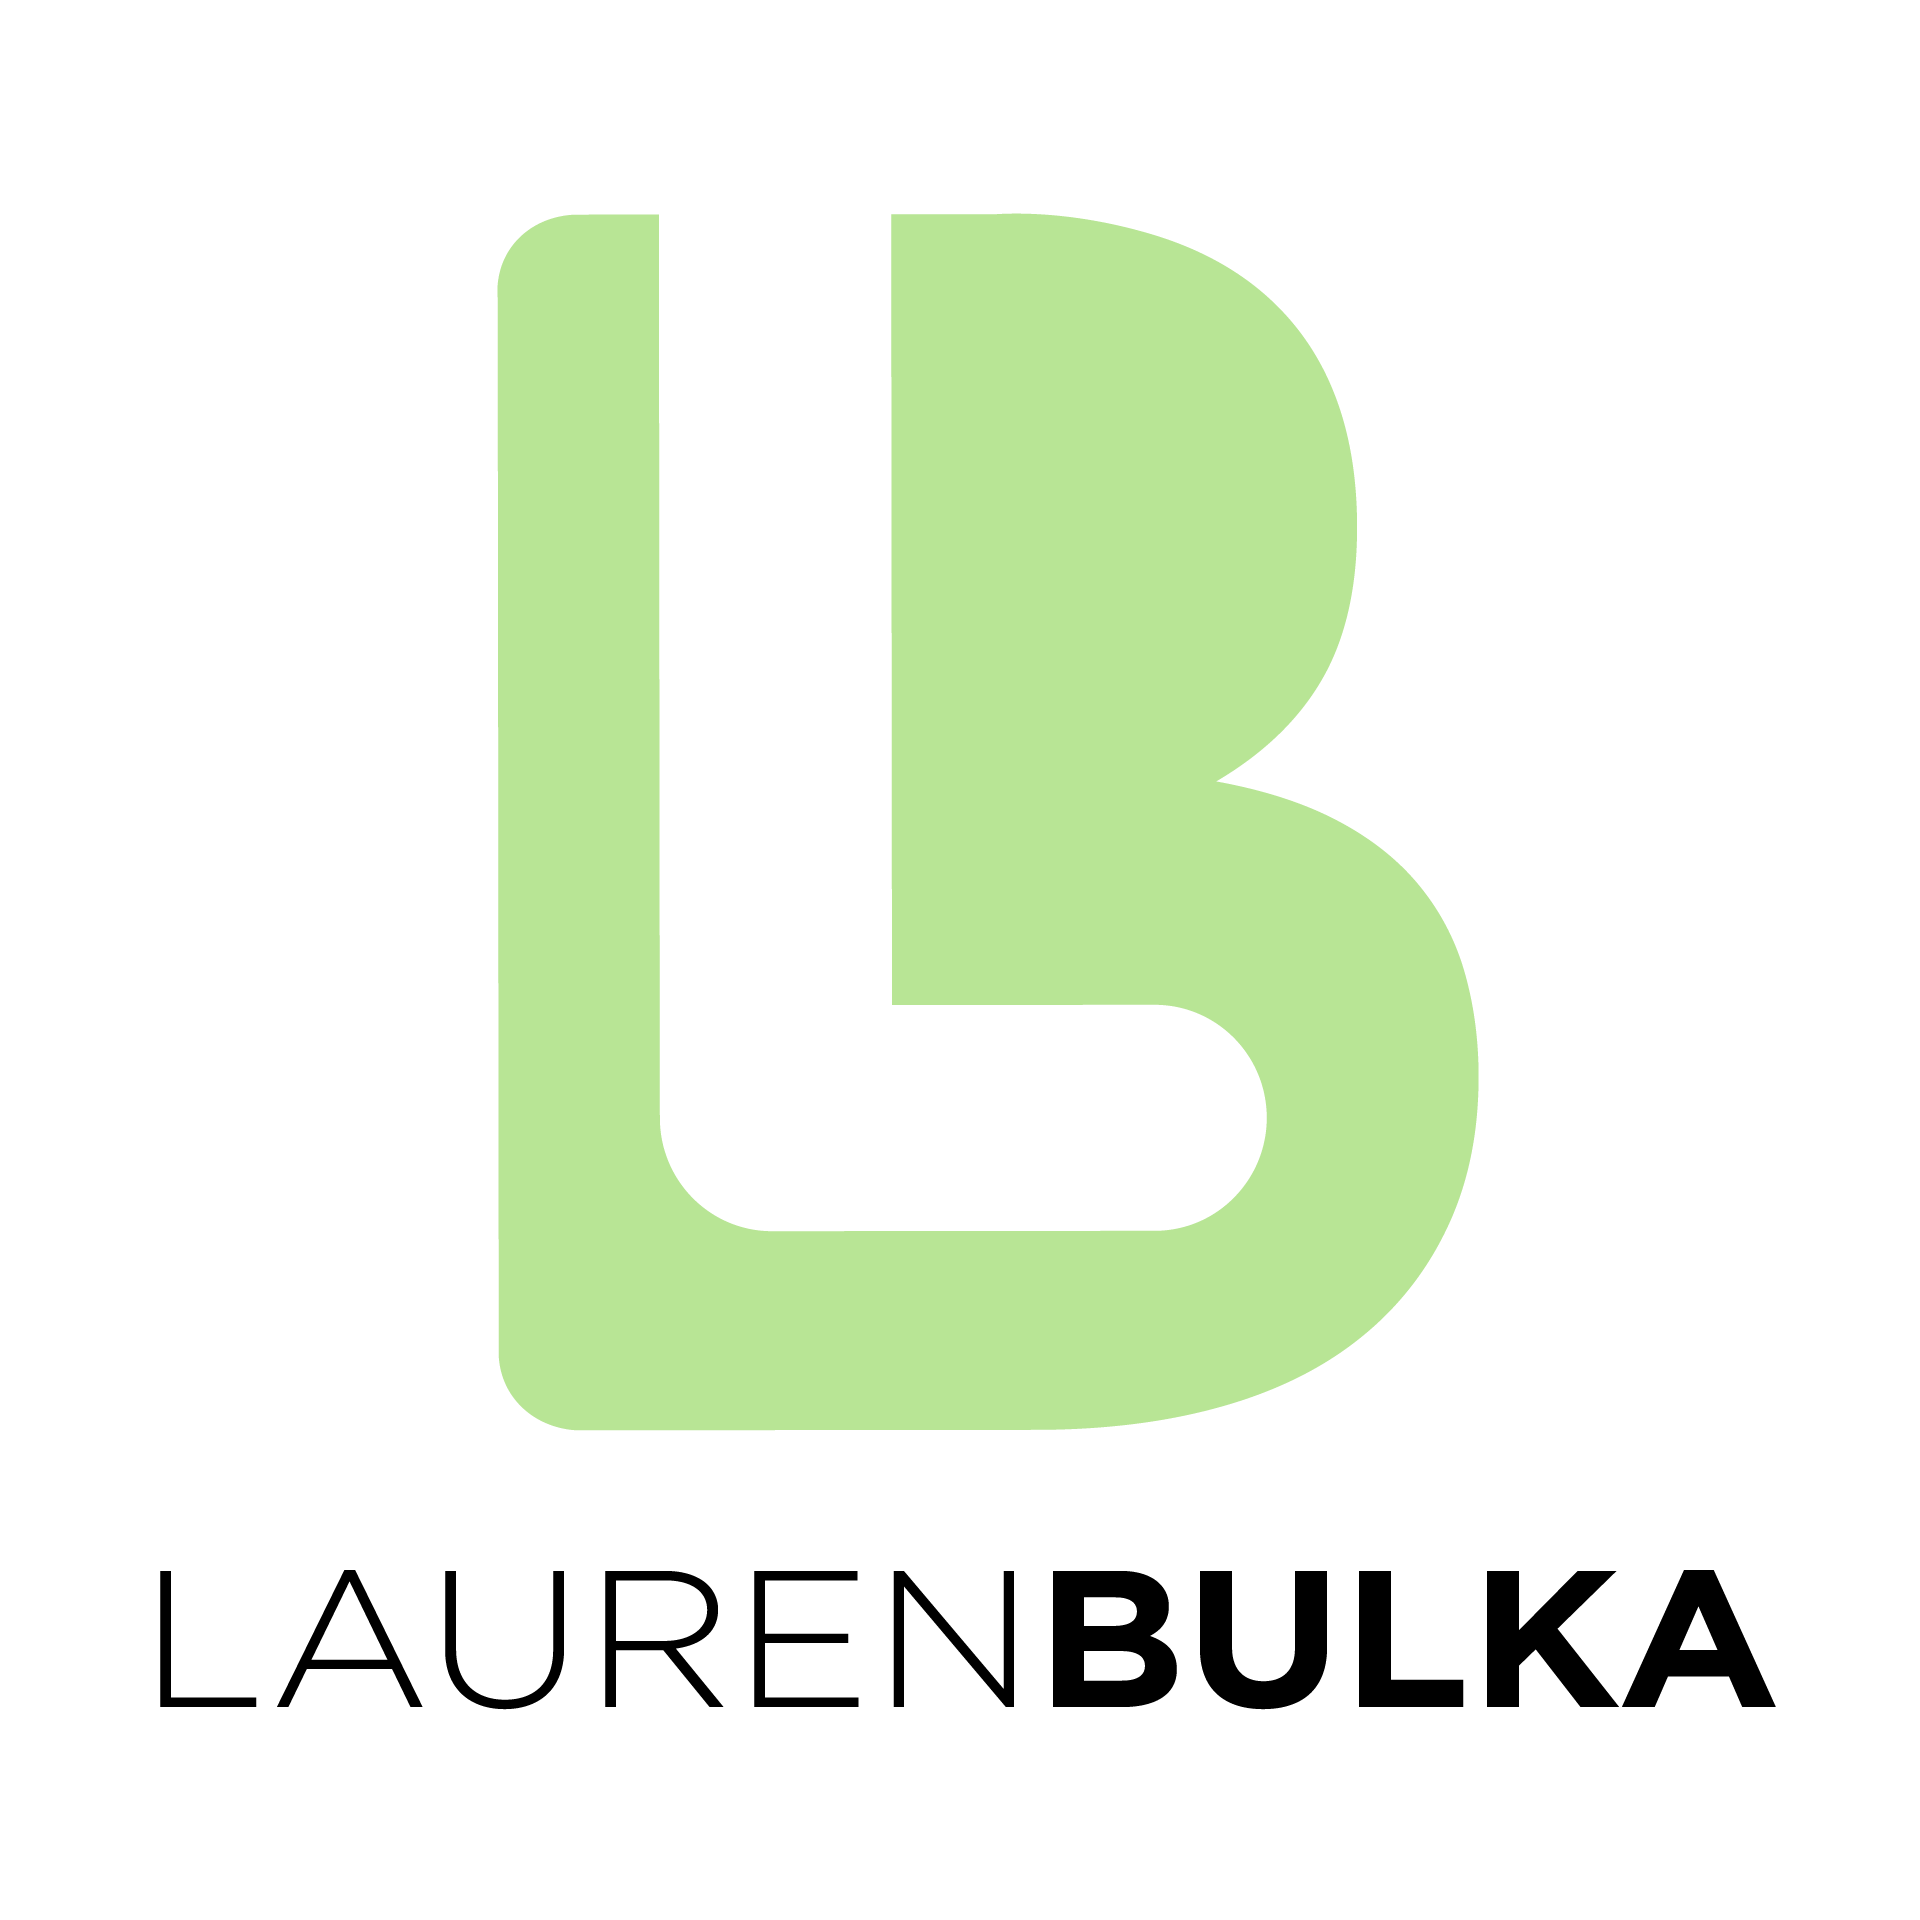 Lauren Bulka